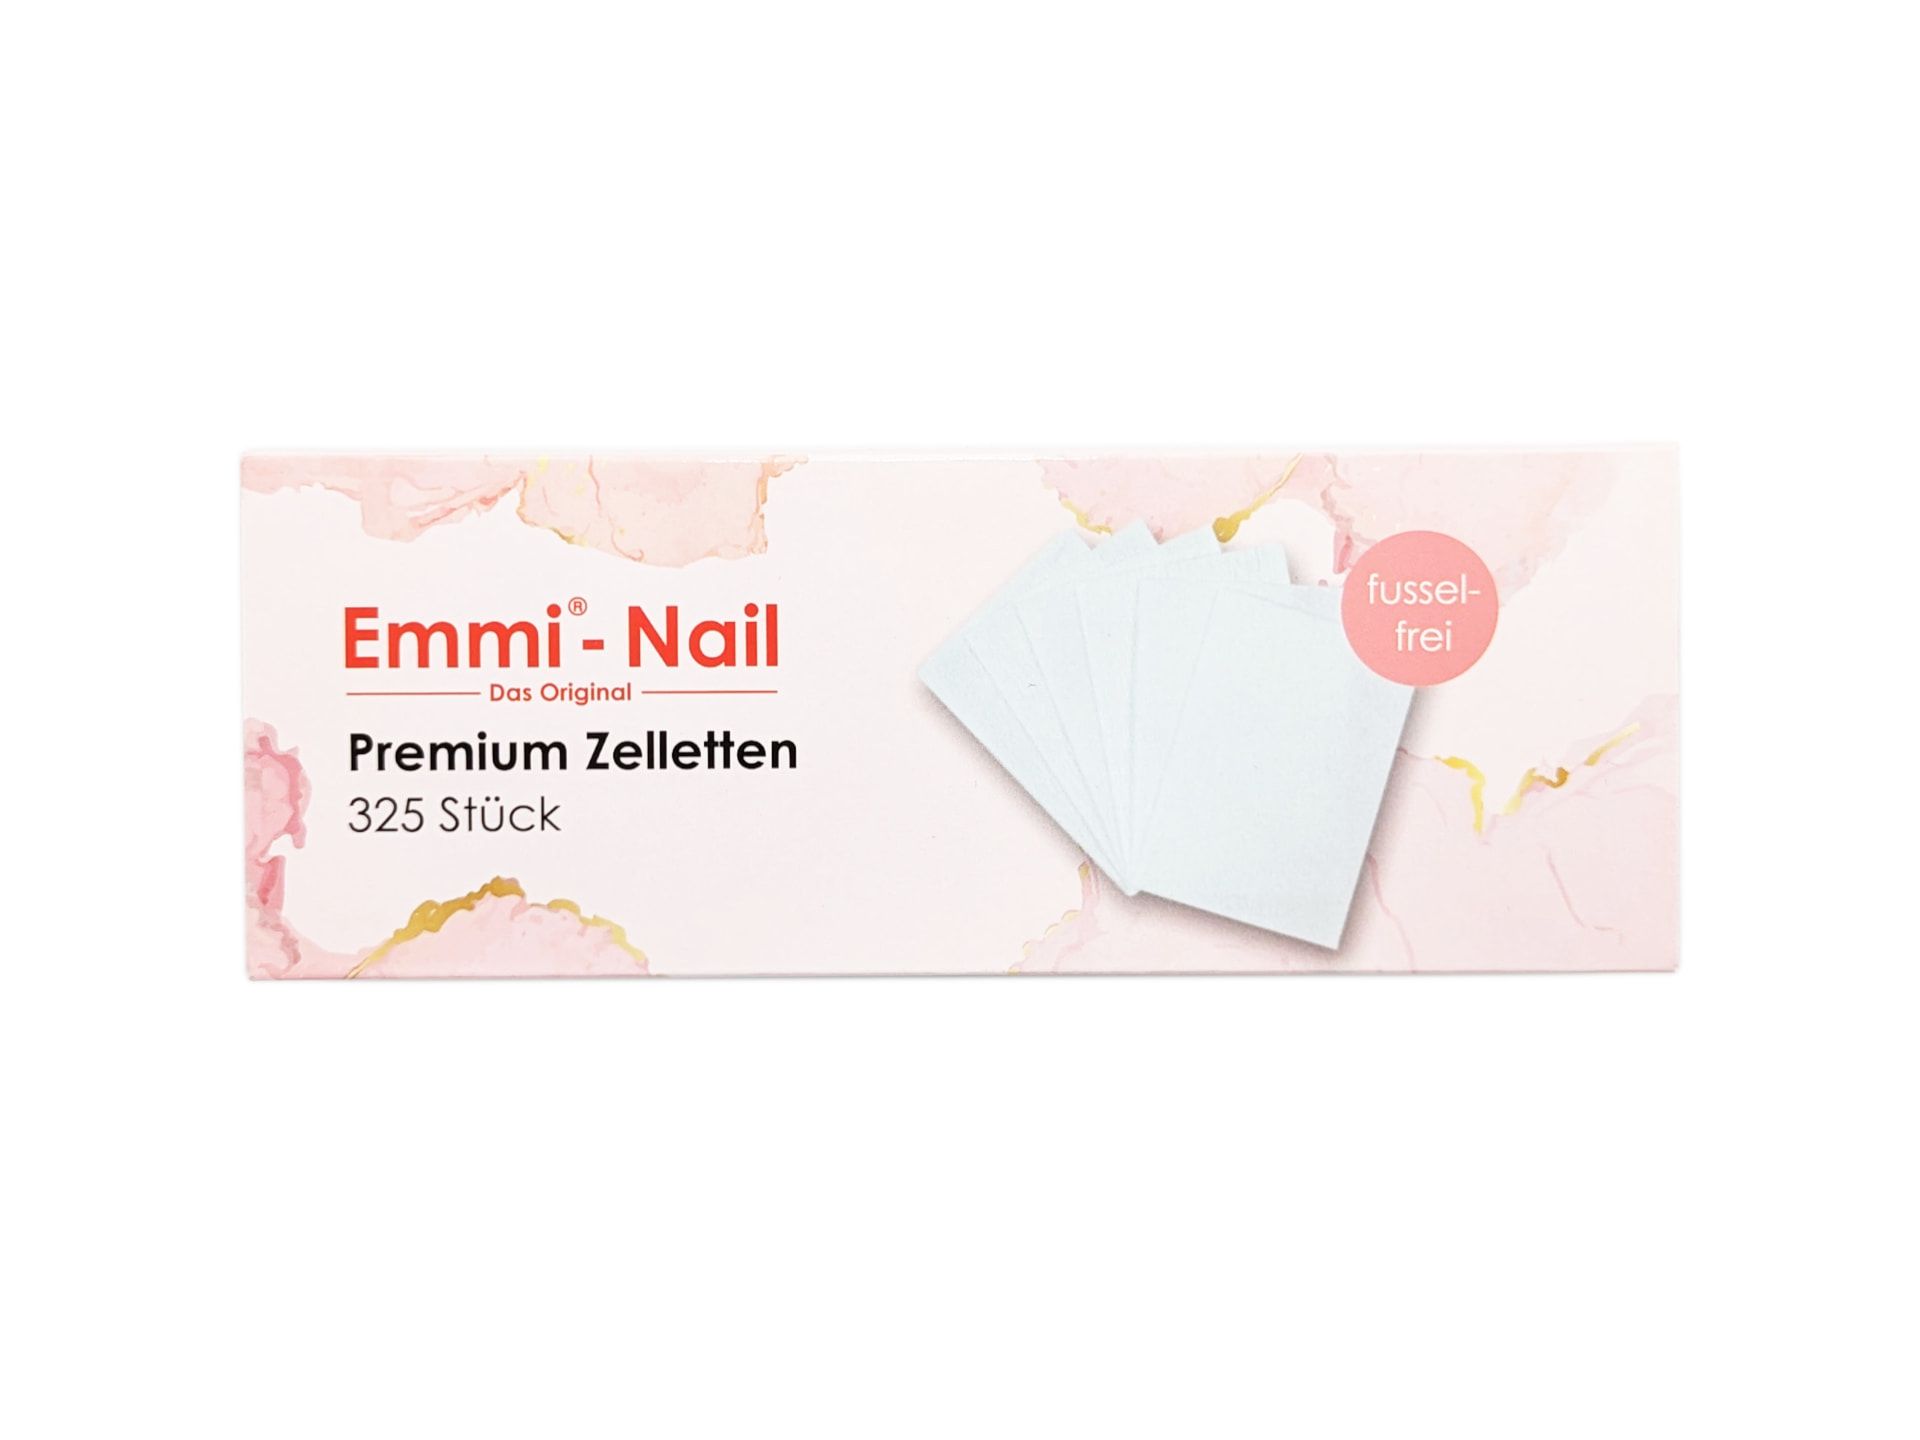 Emmi-Nail Premium Zelletten 325 Stück